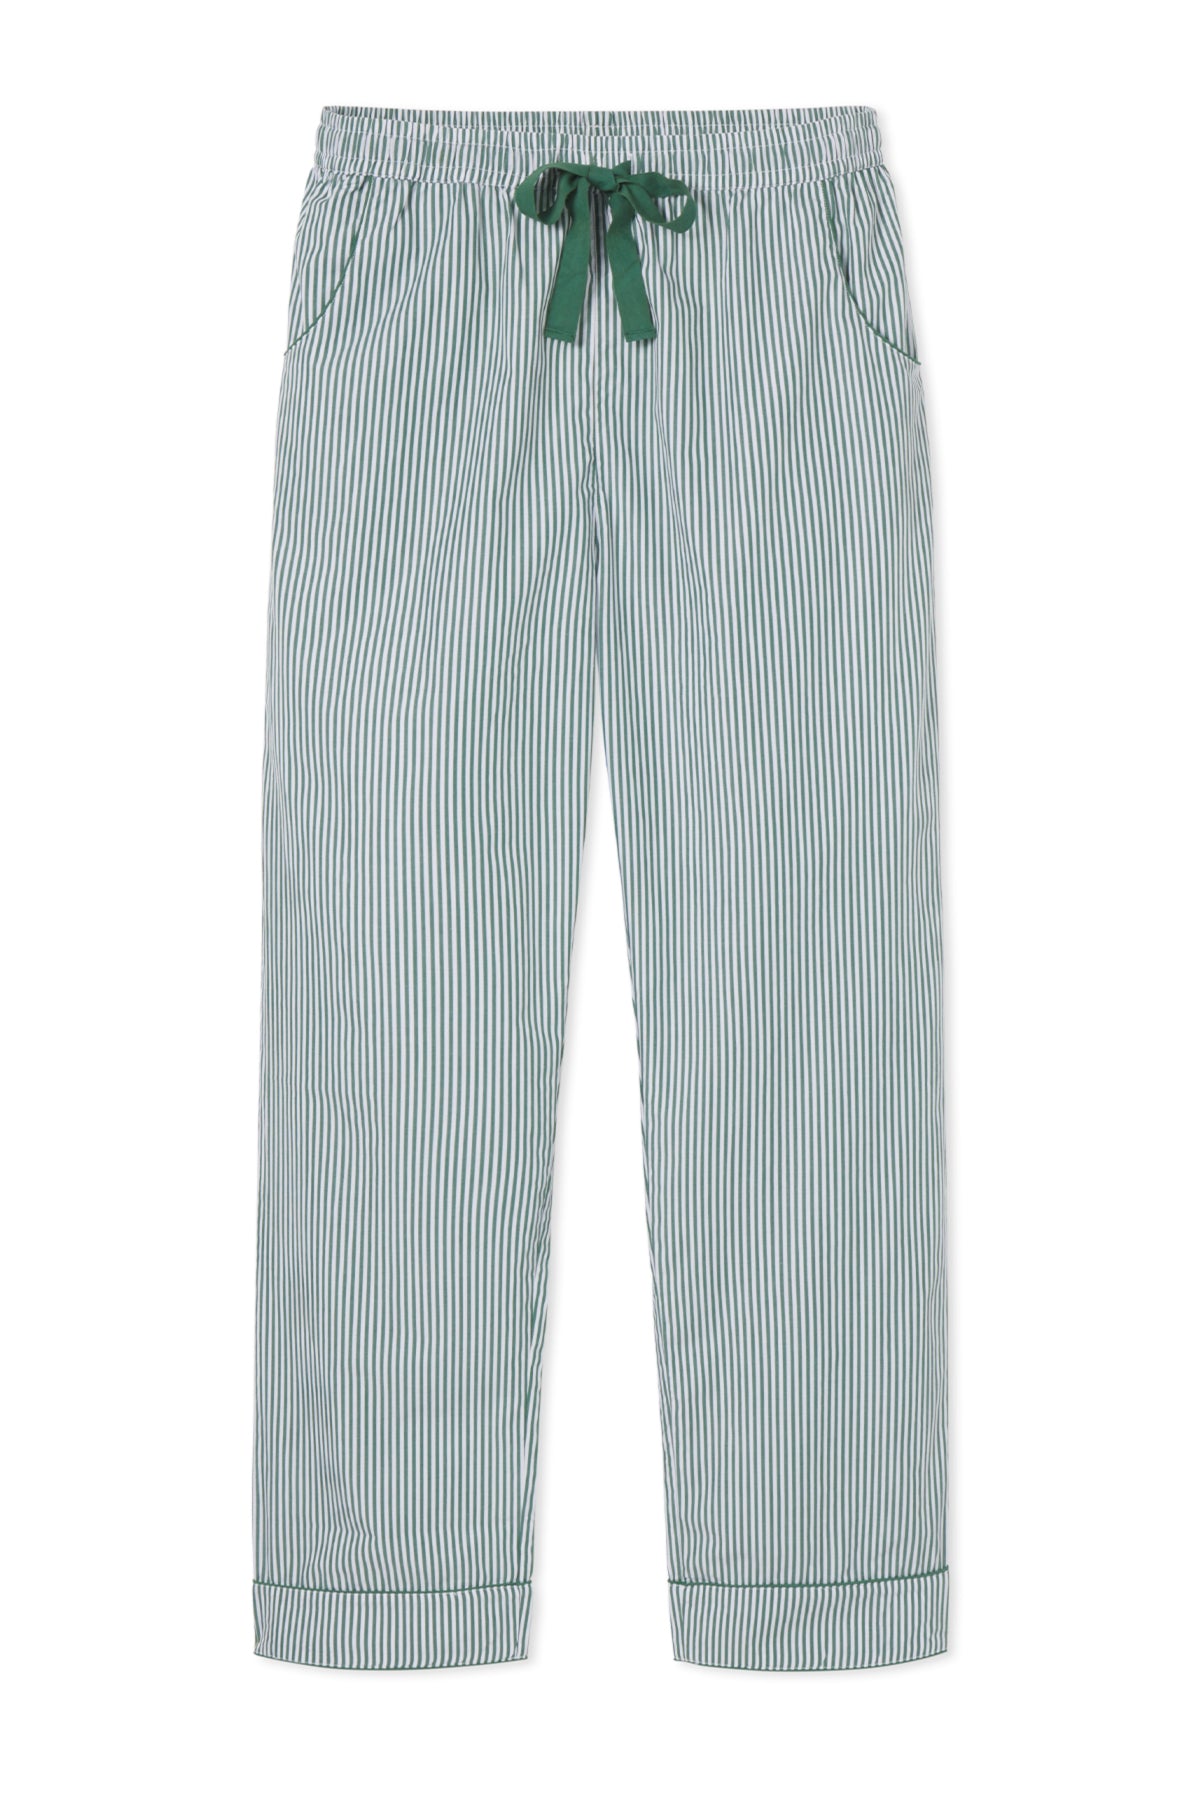 Men's Poplin Pajama Pants in Evergreen